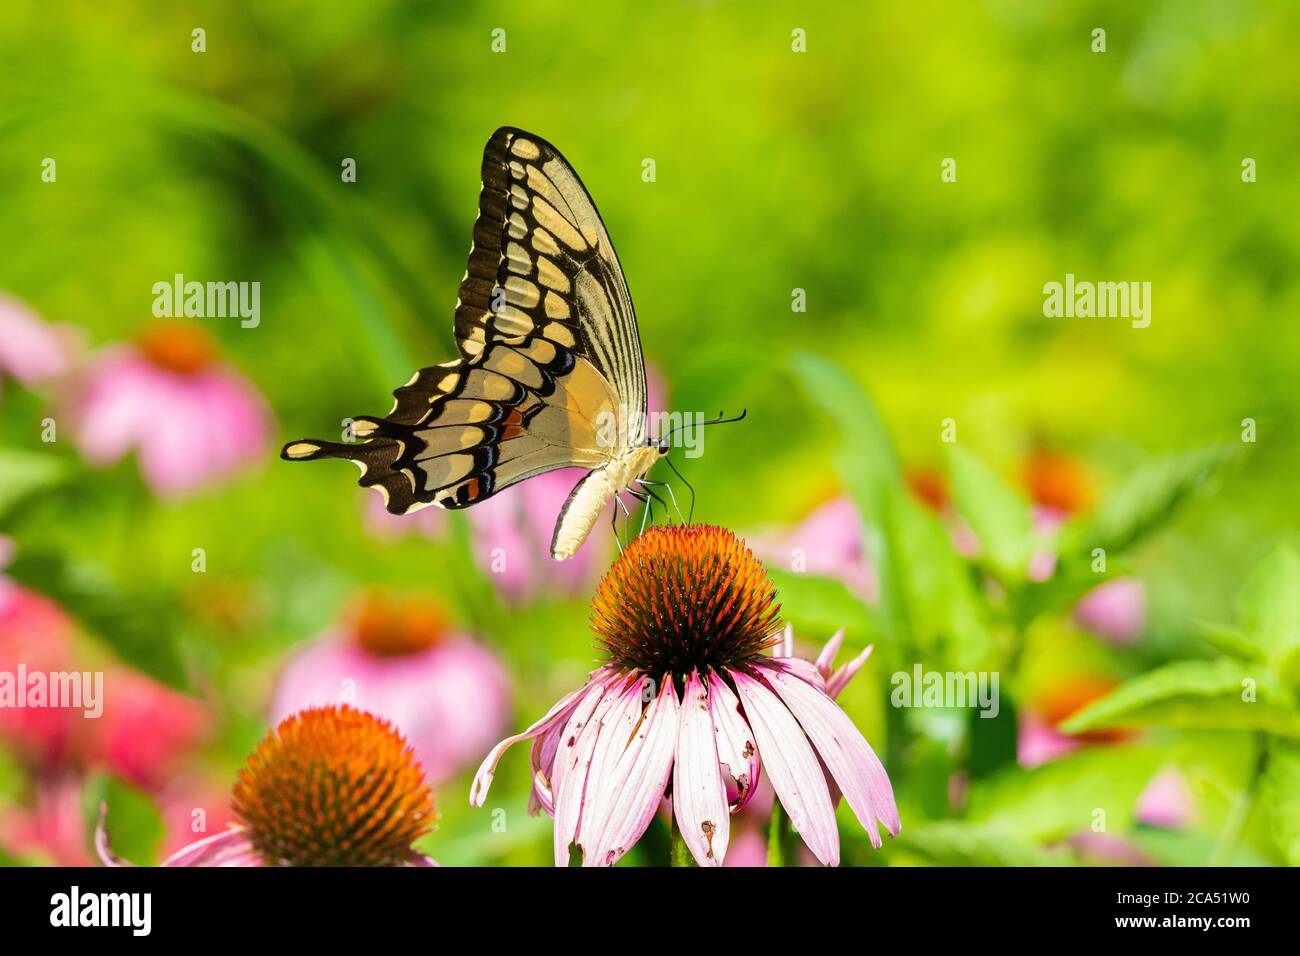 Gros plan de la queue d'aronde géante (Papilio créphontes) perçant sur le conéflefin pourpre (Echinacea purpurea), comté de Marion, Illinois, États-Unis Banque D'Images